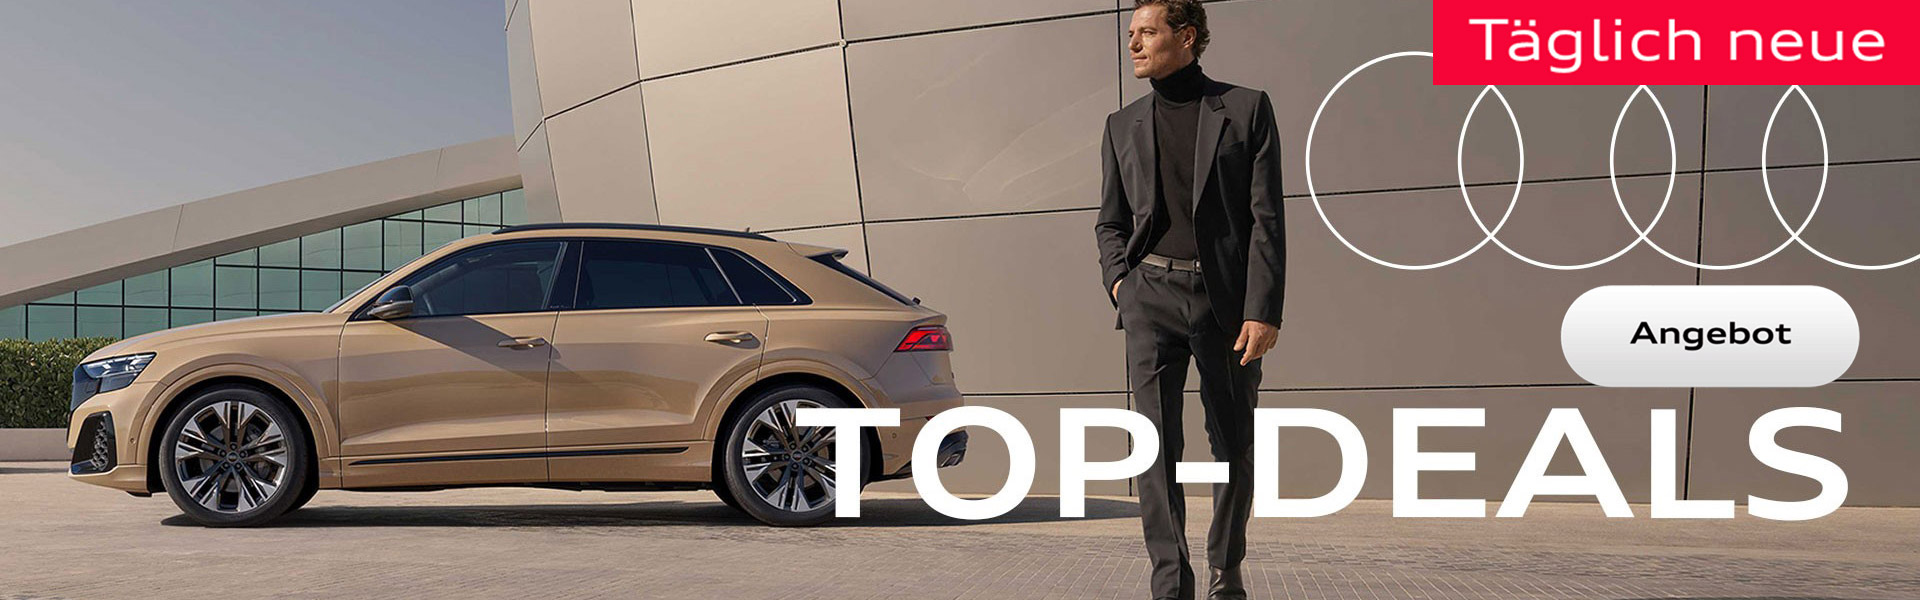 Täglich neue Audi Top Deals!